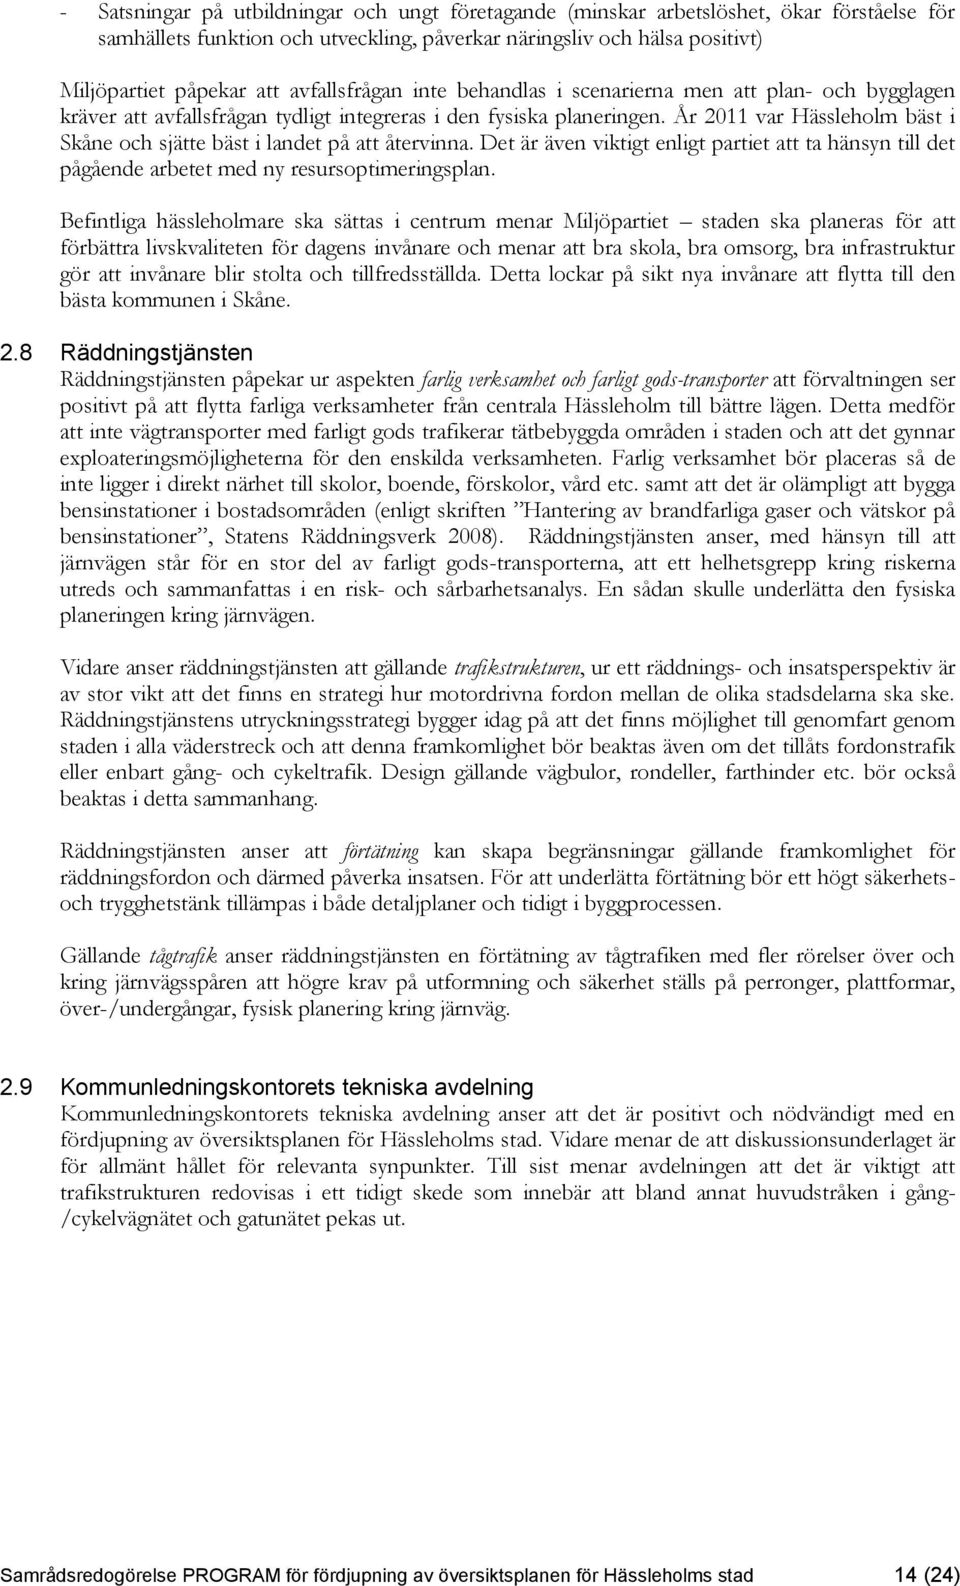 År 2011 var Hässleholm bäst i Skåne och sjätte bäst i landet på att återvinna. Det är även viktigt enligt partiet att ta hänsyn till det pågående arbetet med ny resursoptimeringsplan.